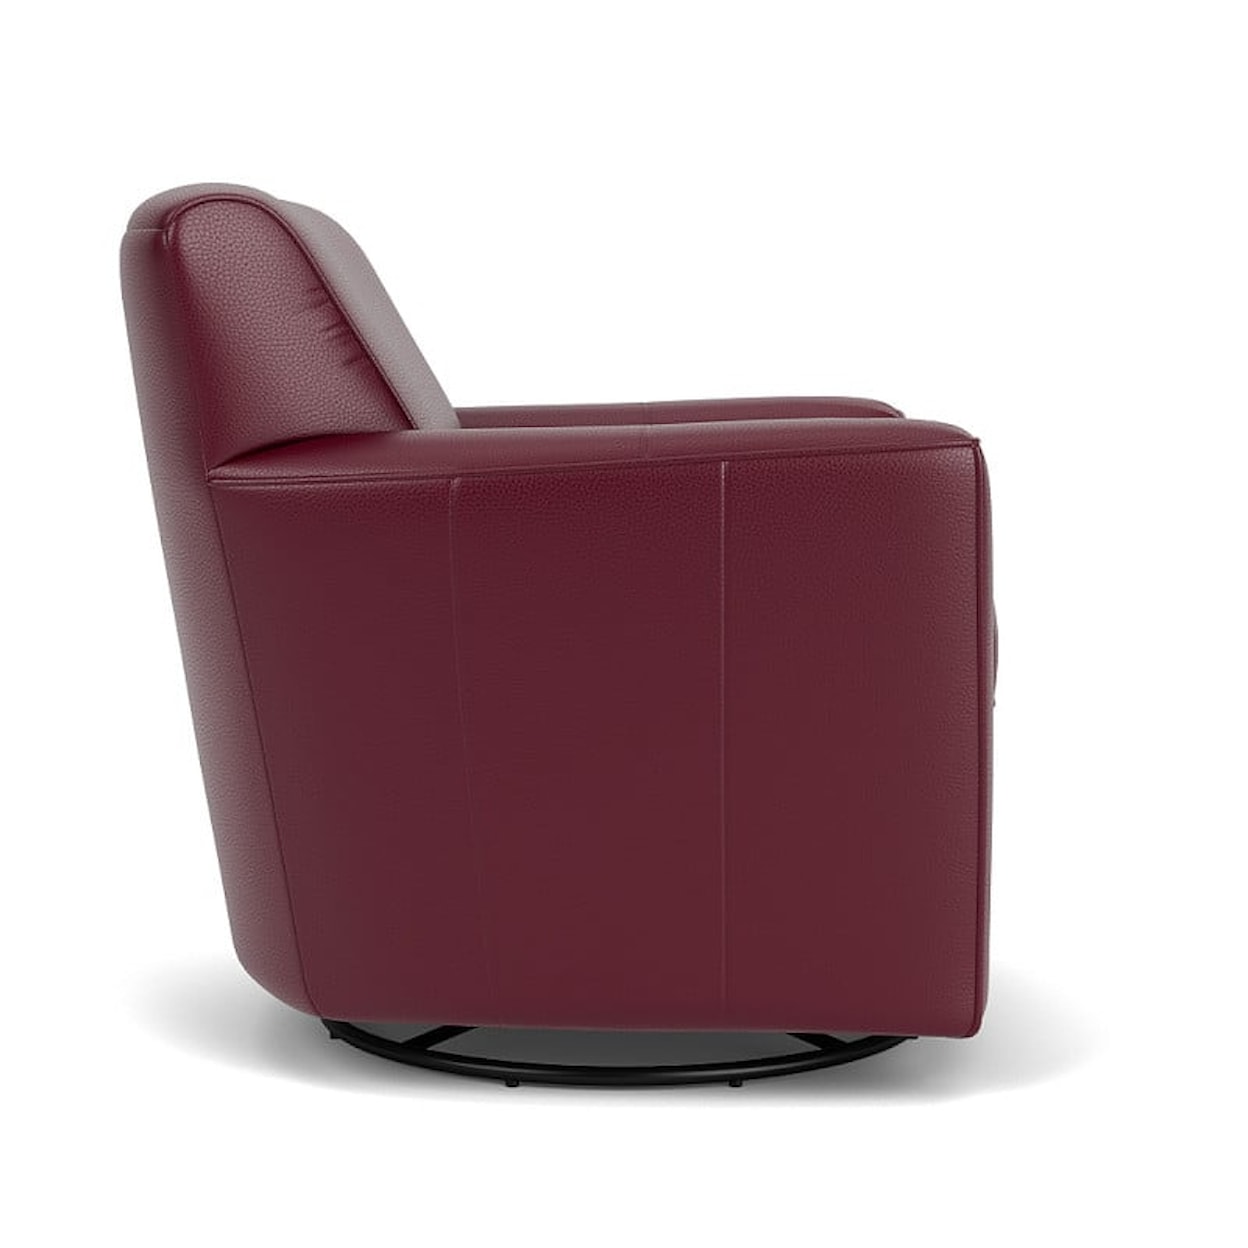 Flexsteel Kingman Swivel Glider Chair